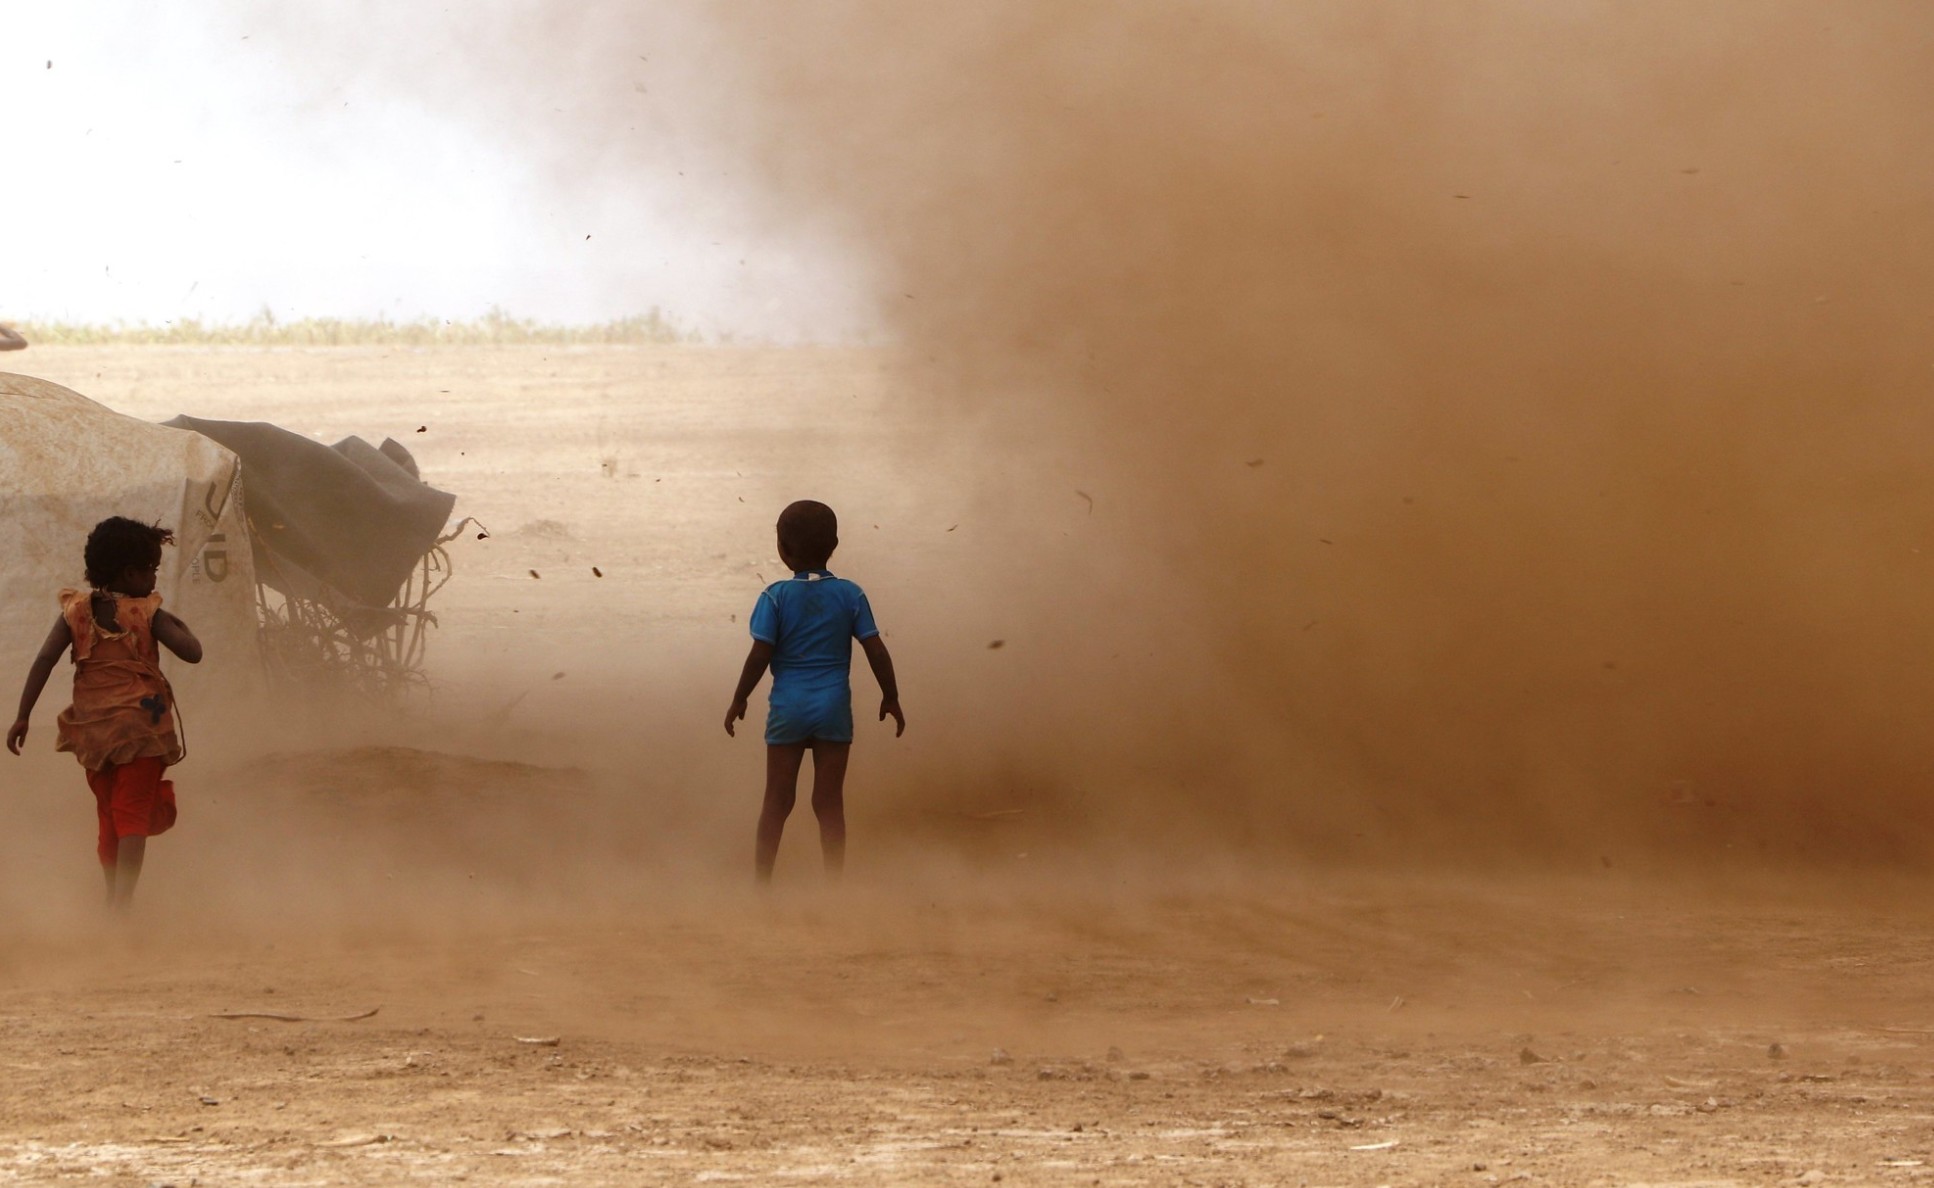 Two children in a dusty landscape